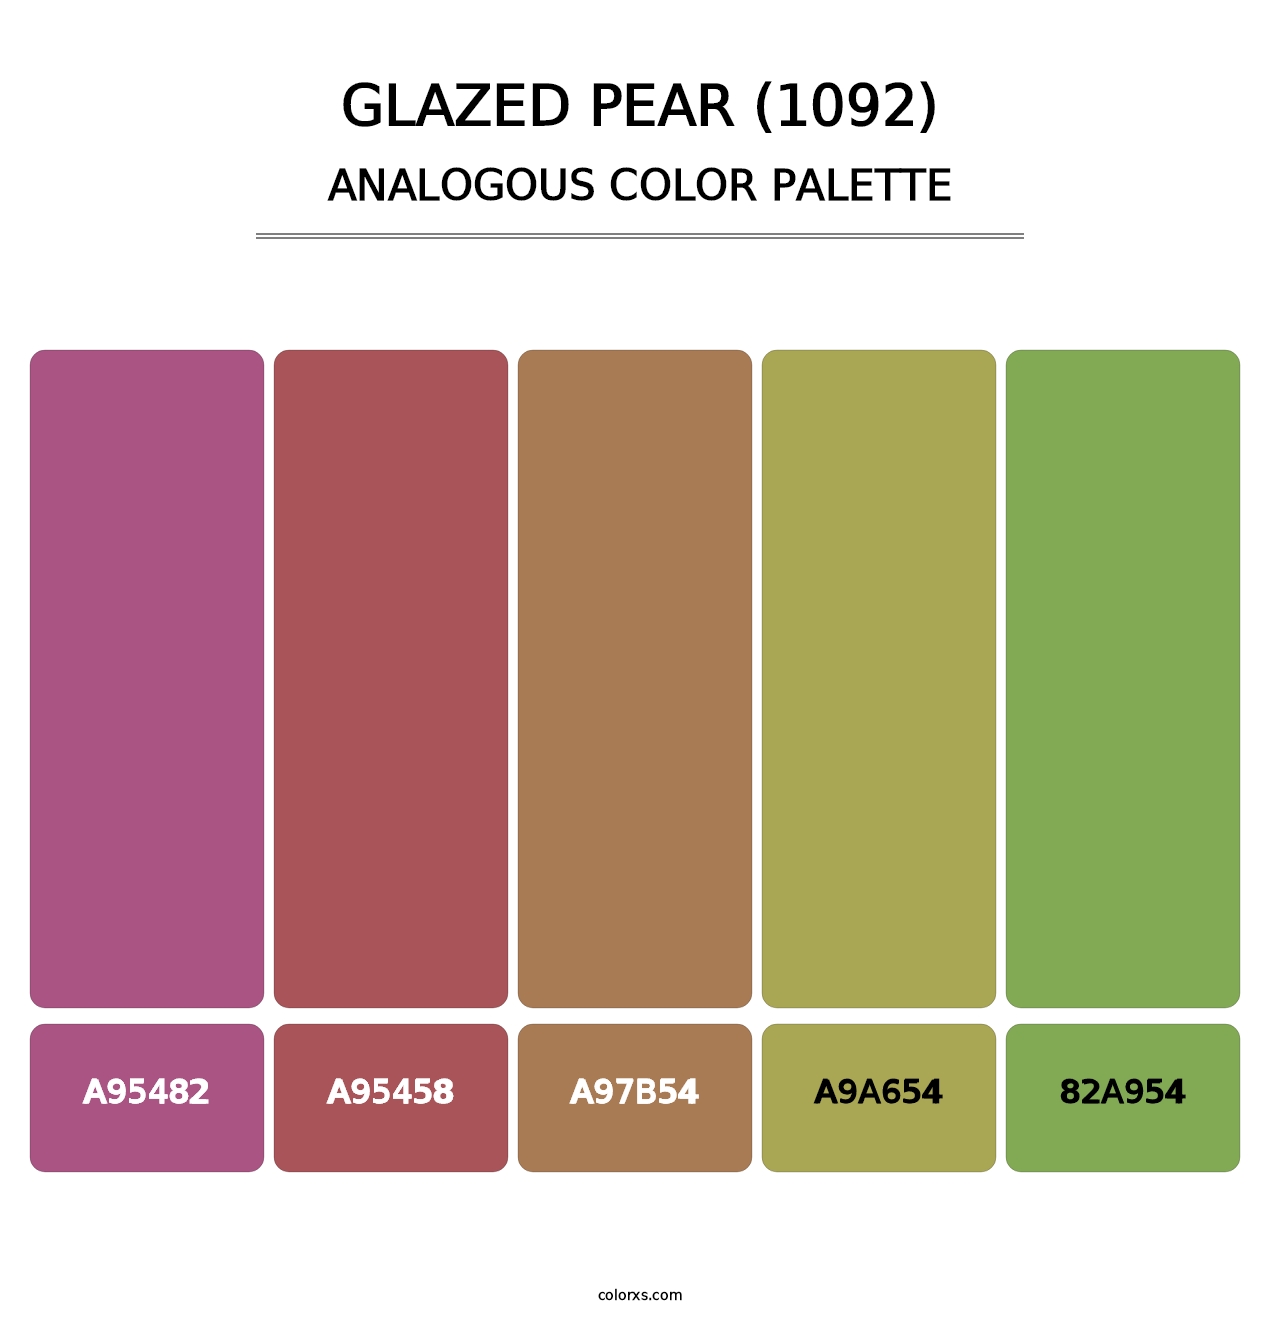 Glazed Pear (1092) - Analogous Color Palette